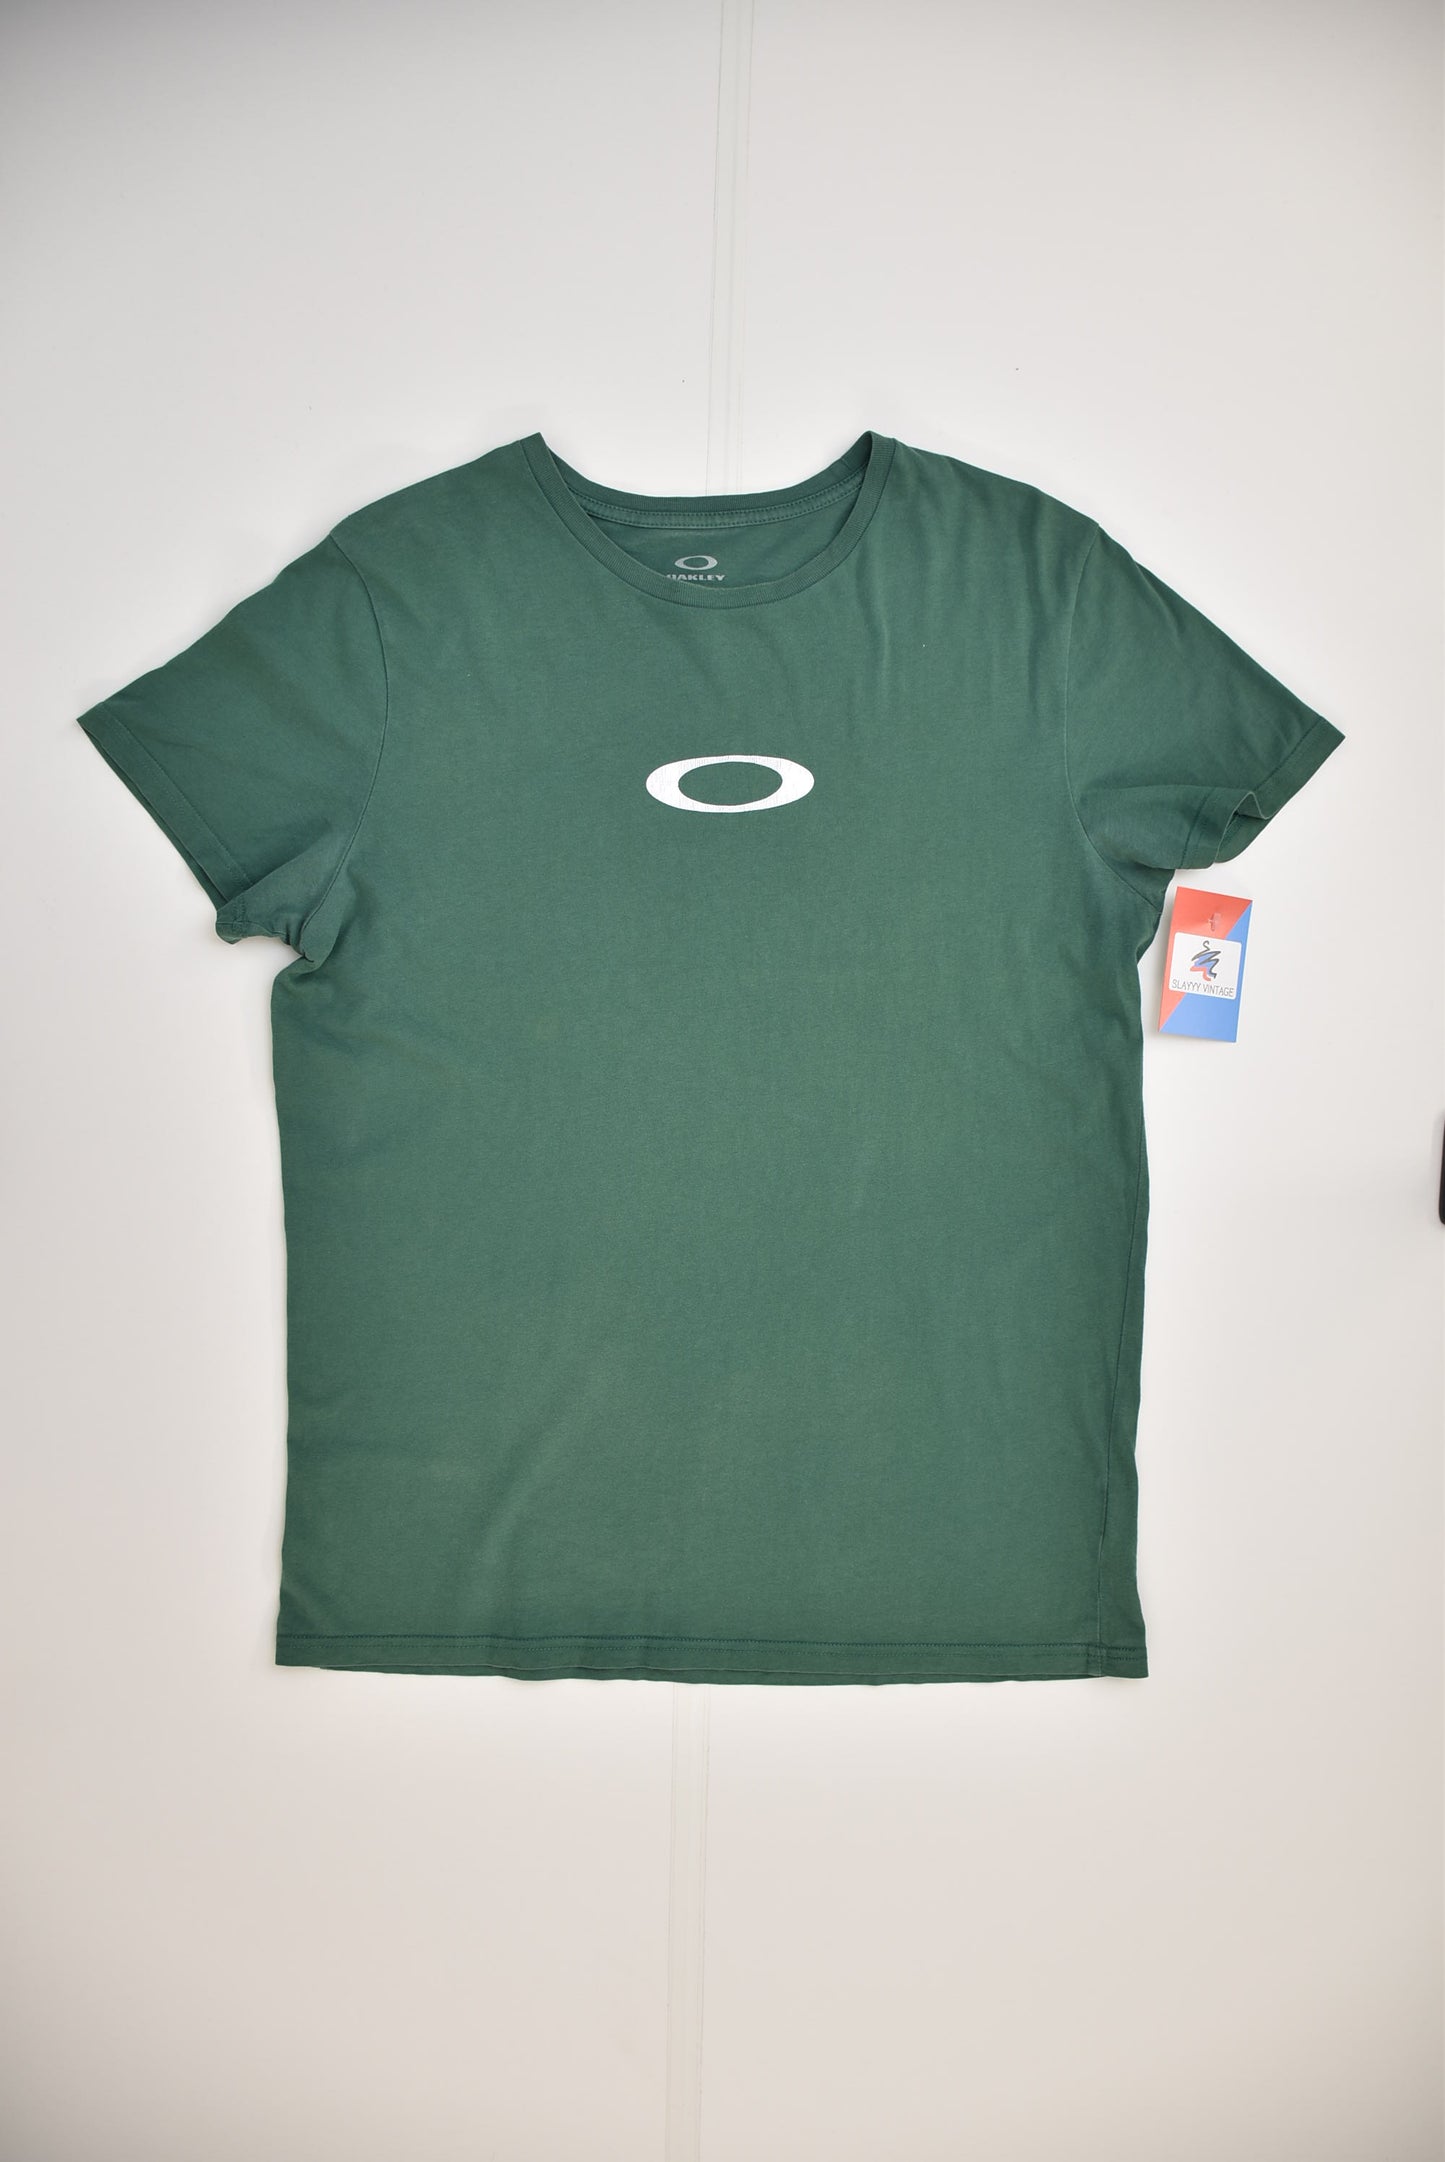 Oakley T-shirt (XL)